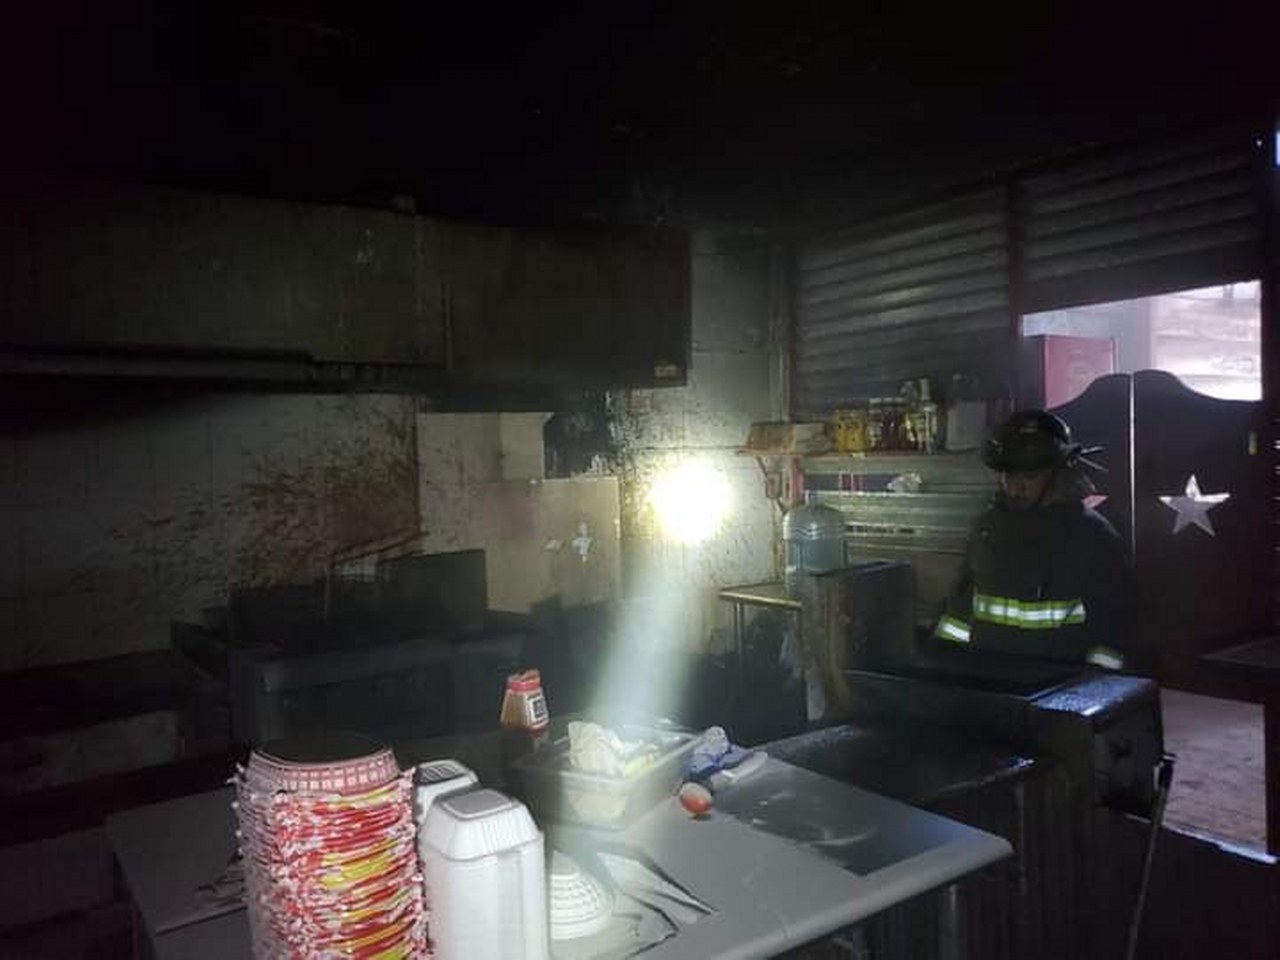 El aceite caliente de una freidora causó que la cocina de un establecimiento se comenzara a quemar